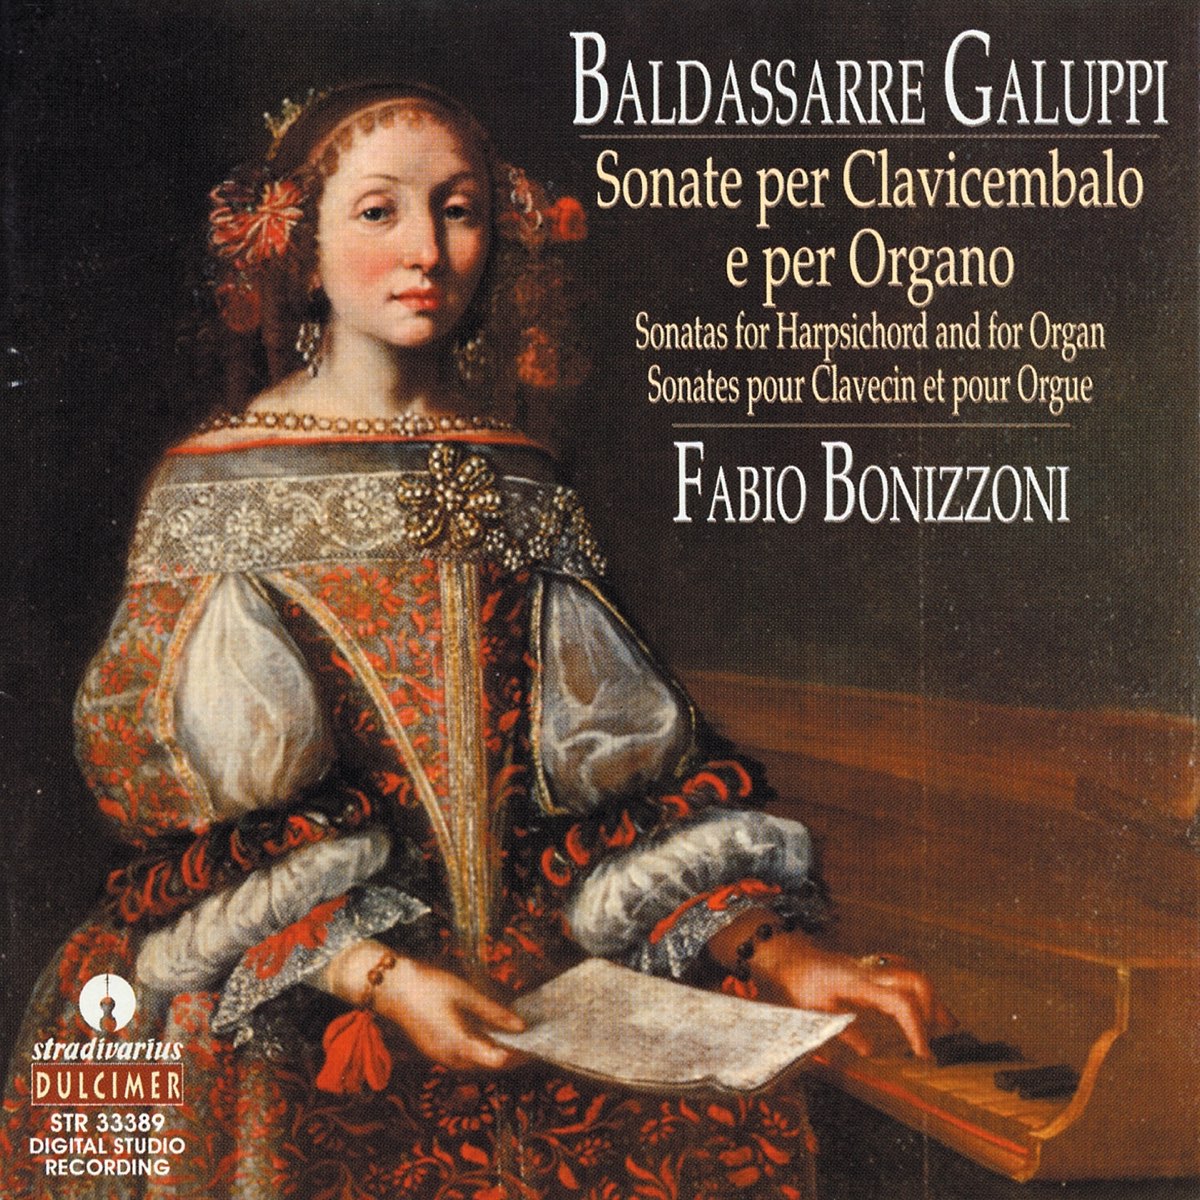 ‎Baldassarre Galuppi: Sonate per clavicembalo e per organo - Album di ...